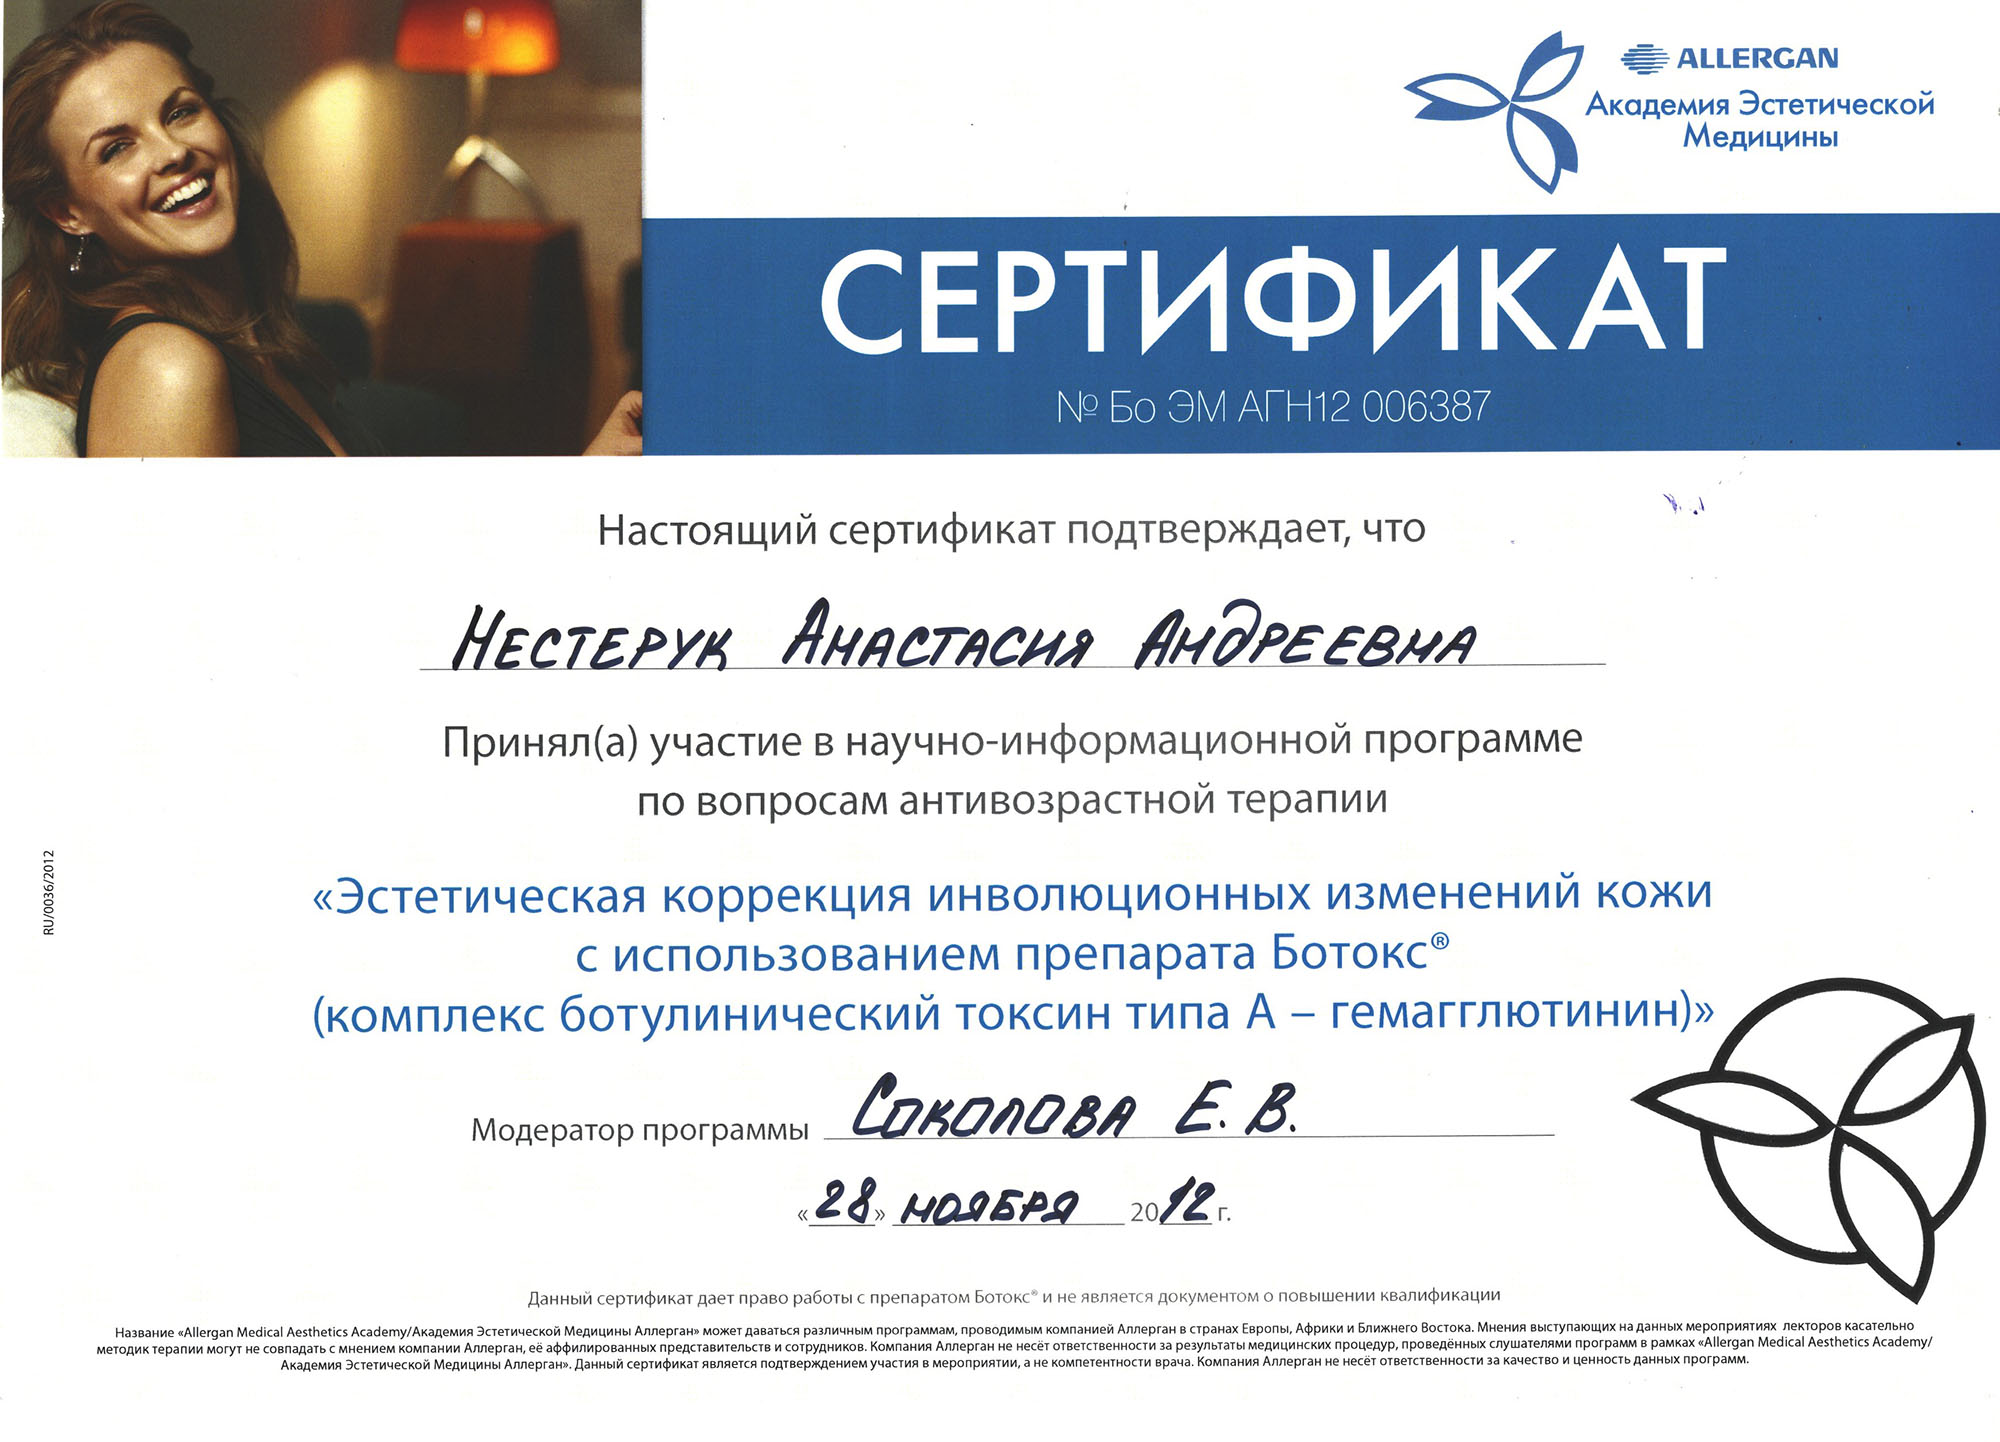 Сертификат — Программа «Эстетическая коррекция изменений кожи с использованием препарата Ботокс». Яблочко Анастасия Андреевна